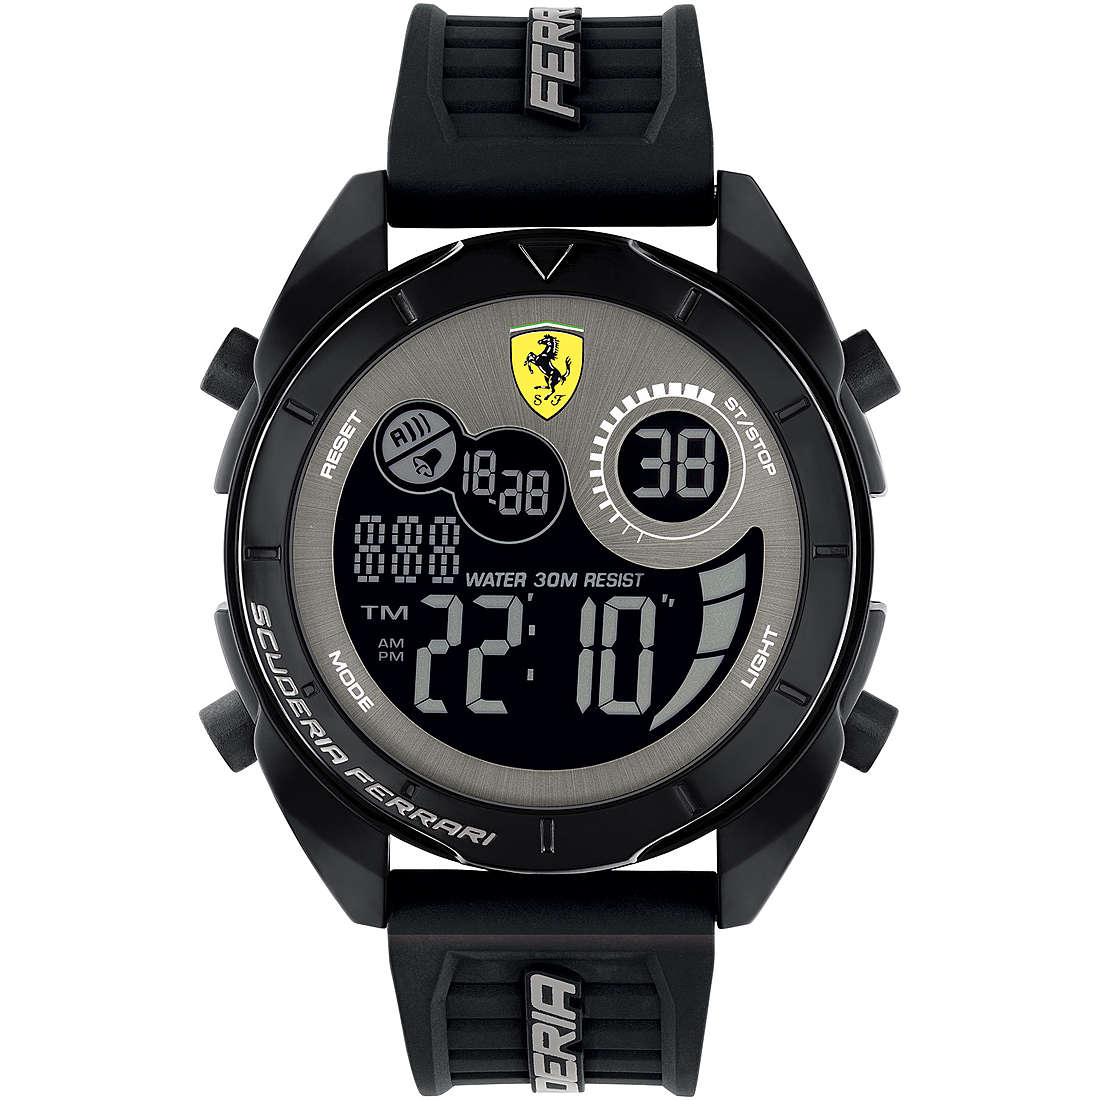 montre numérique homme Scuderia Ferrari FER0830878